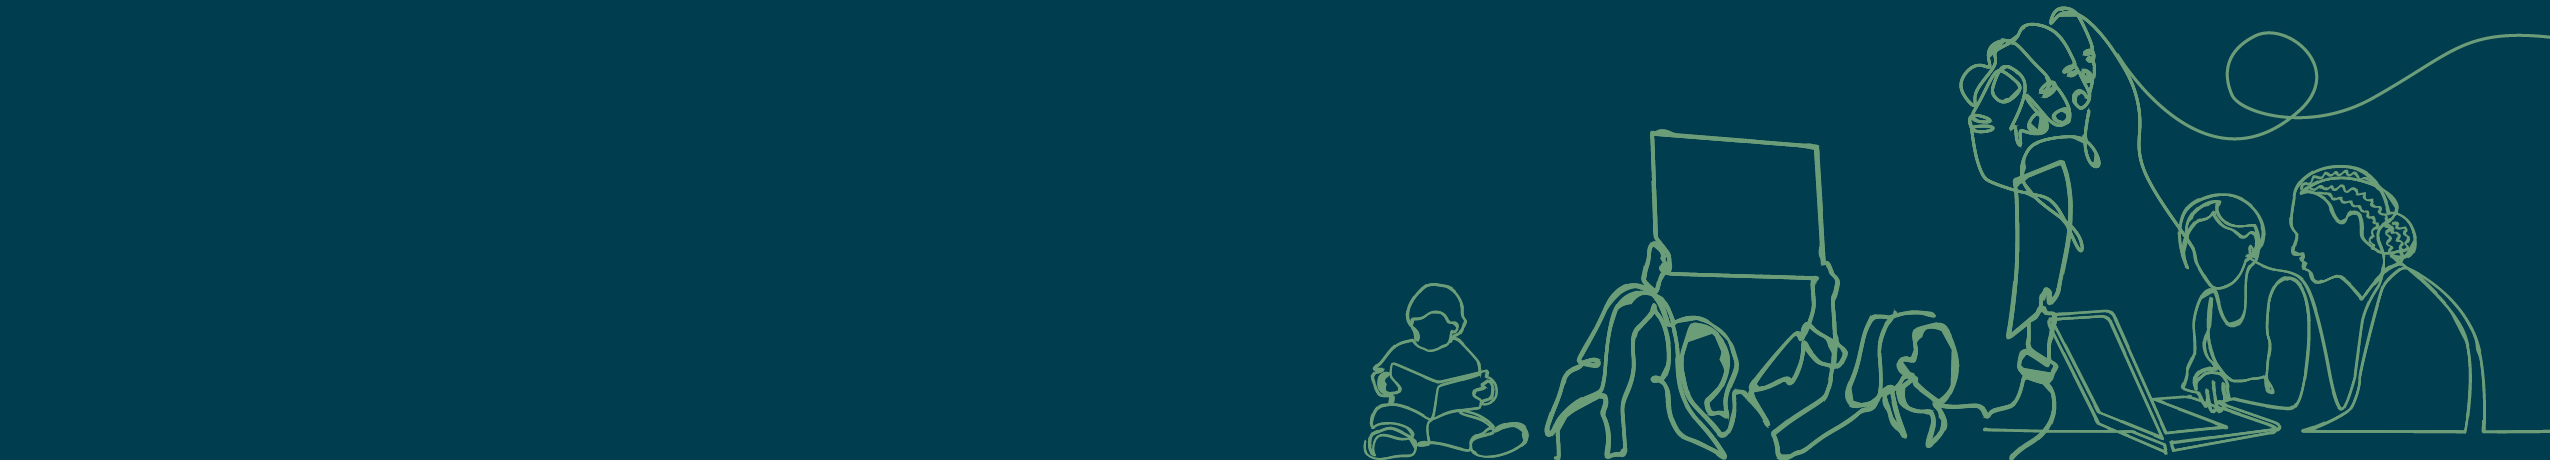 Ilustração em linha verde sobre um fundo azul: um protesto, pessoas reunidas em um laptop, uma criança e um punho